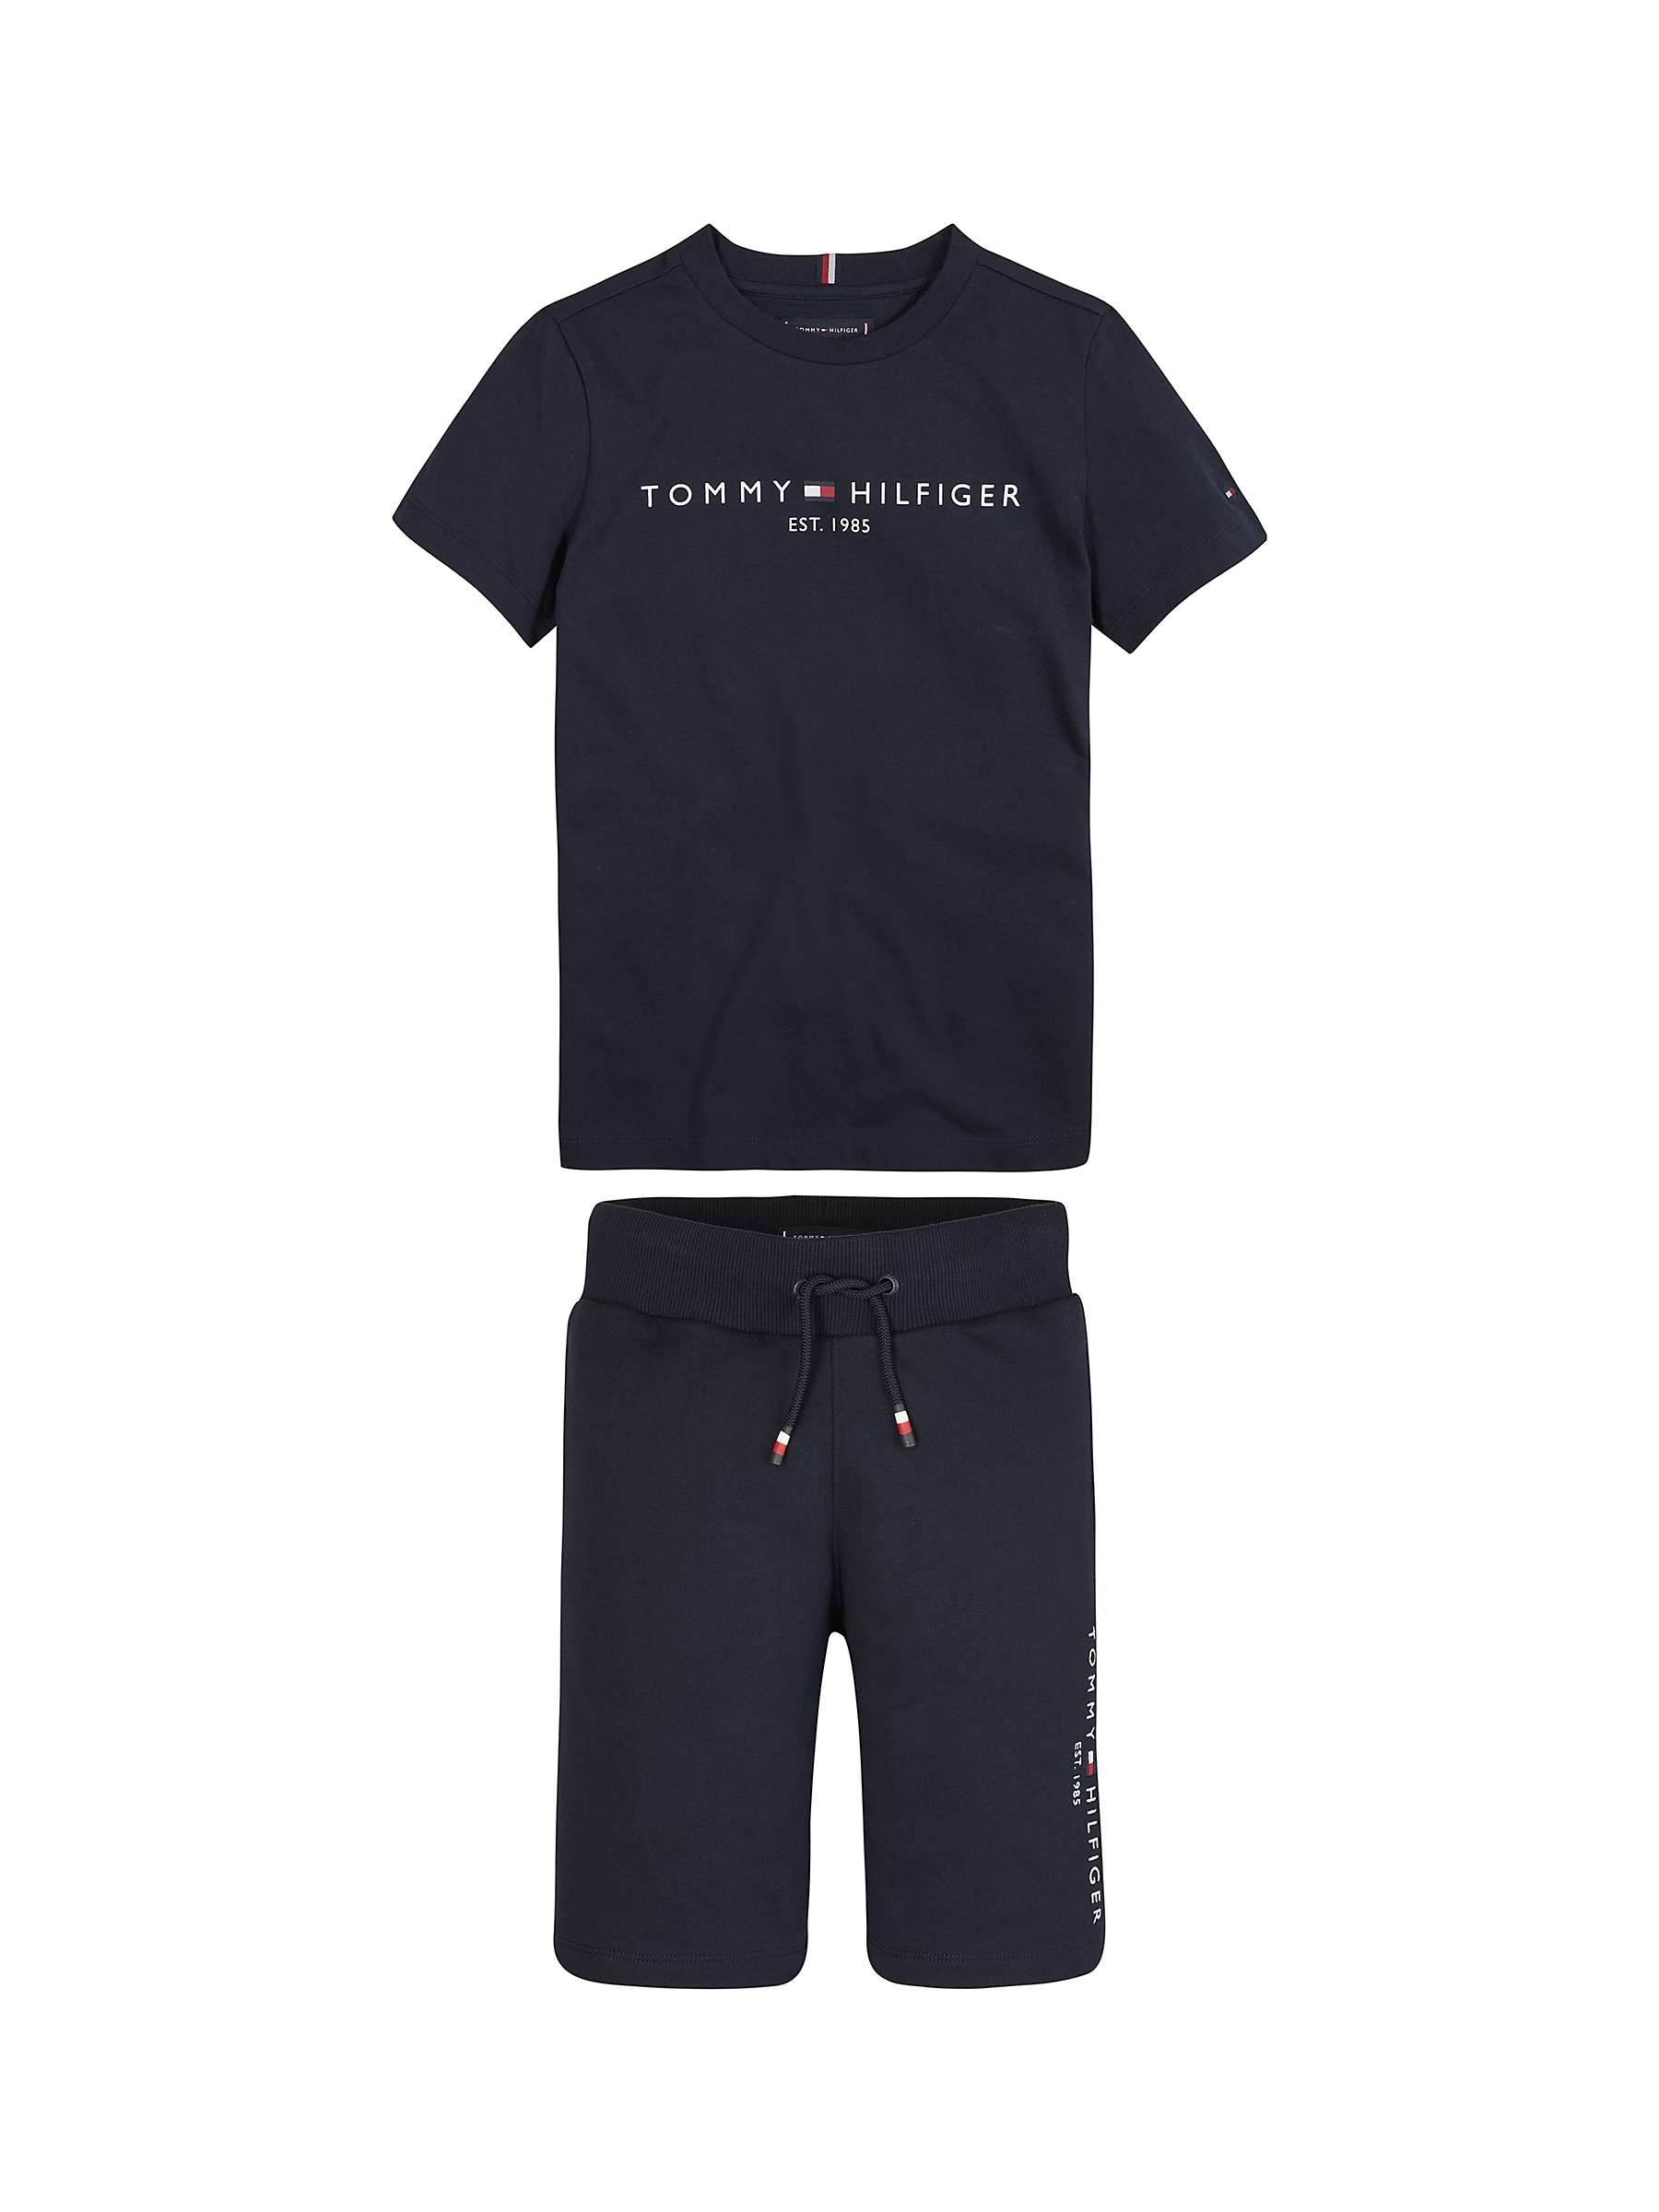 Buy Tommy Hilfiger Kids' Logo Embroidered Cotton T-Shirt & Short Set, Black Online at johnlewis.com